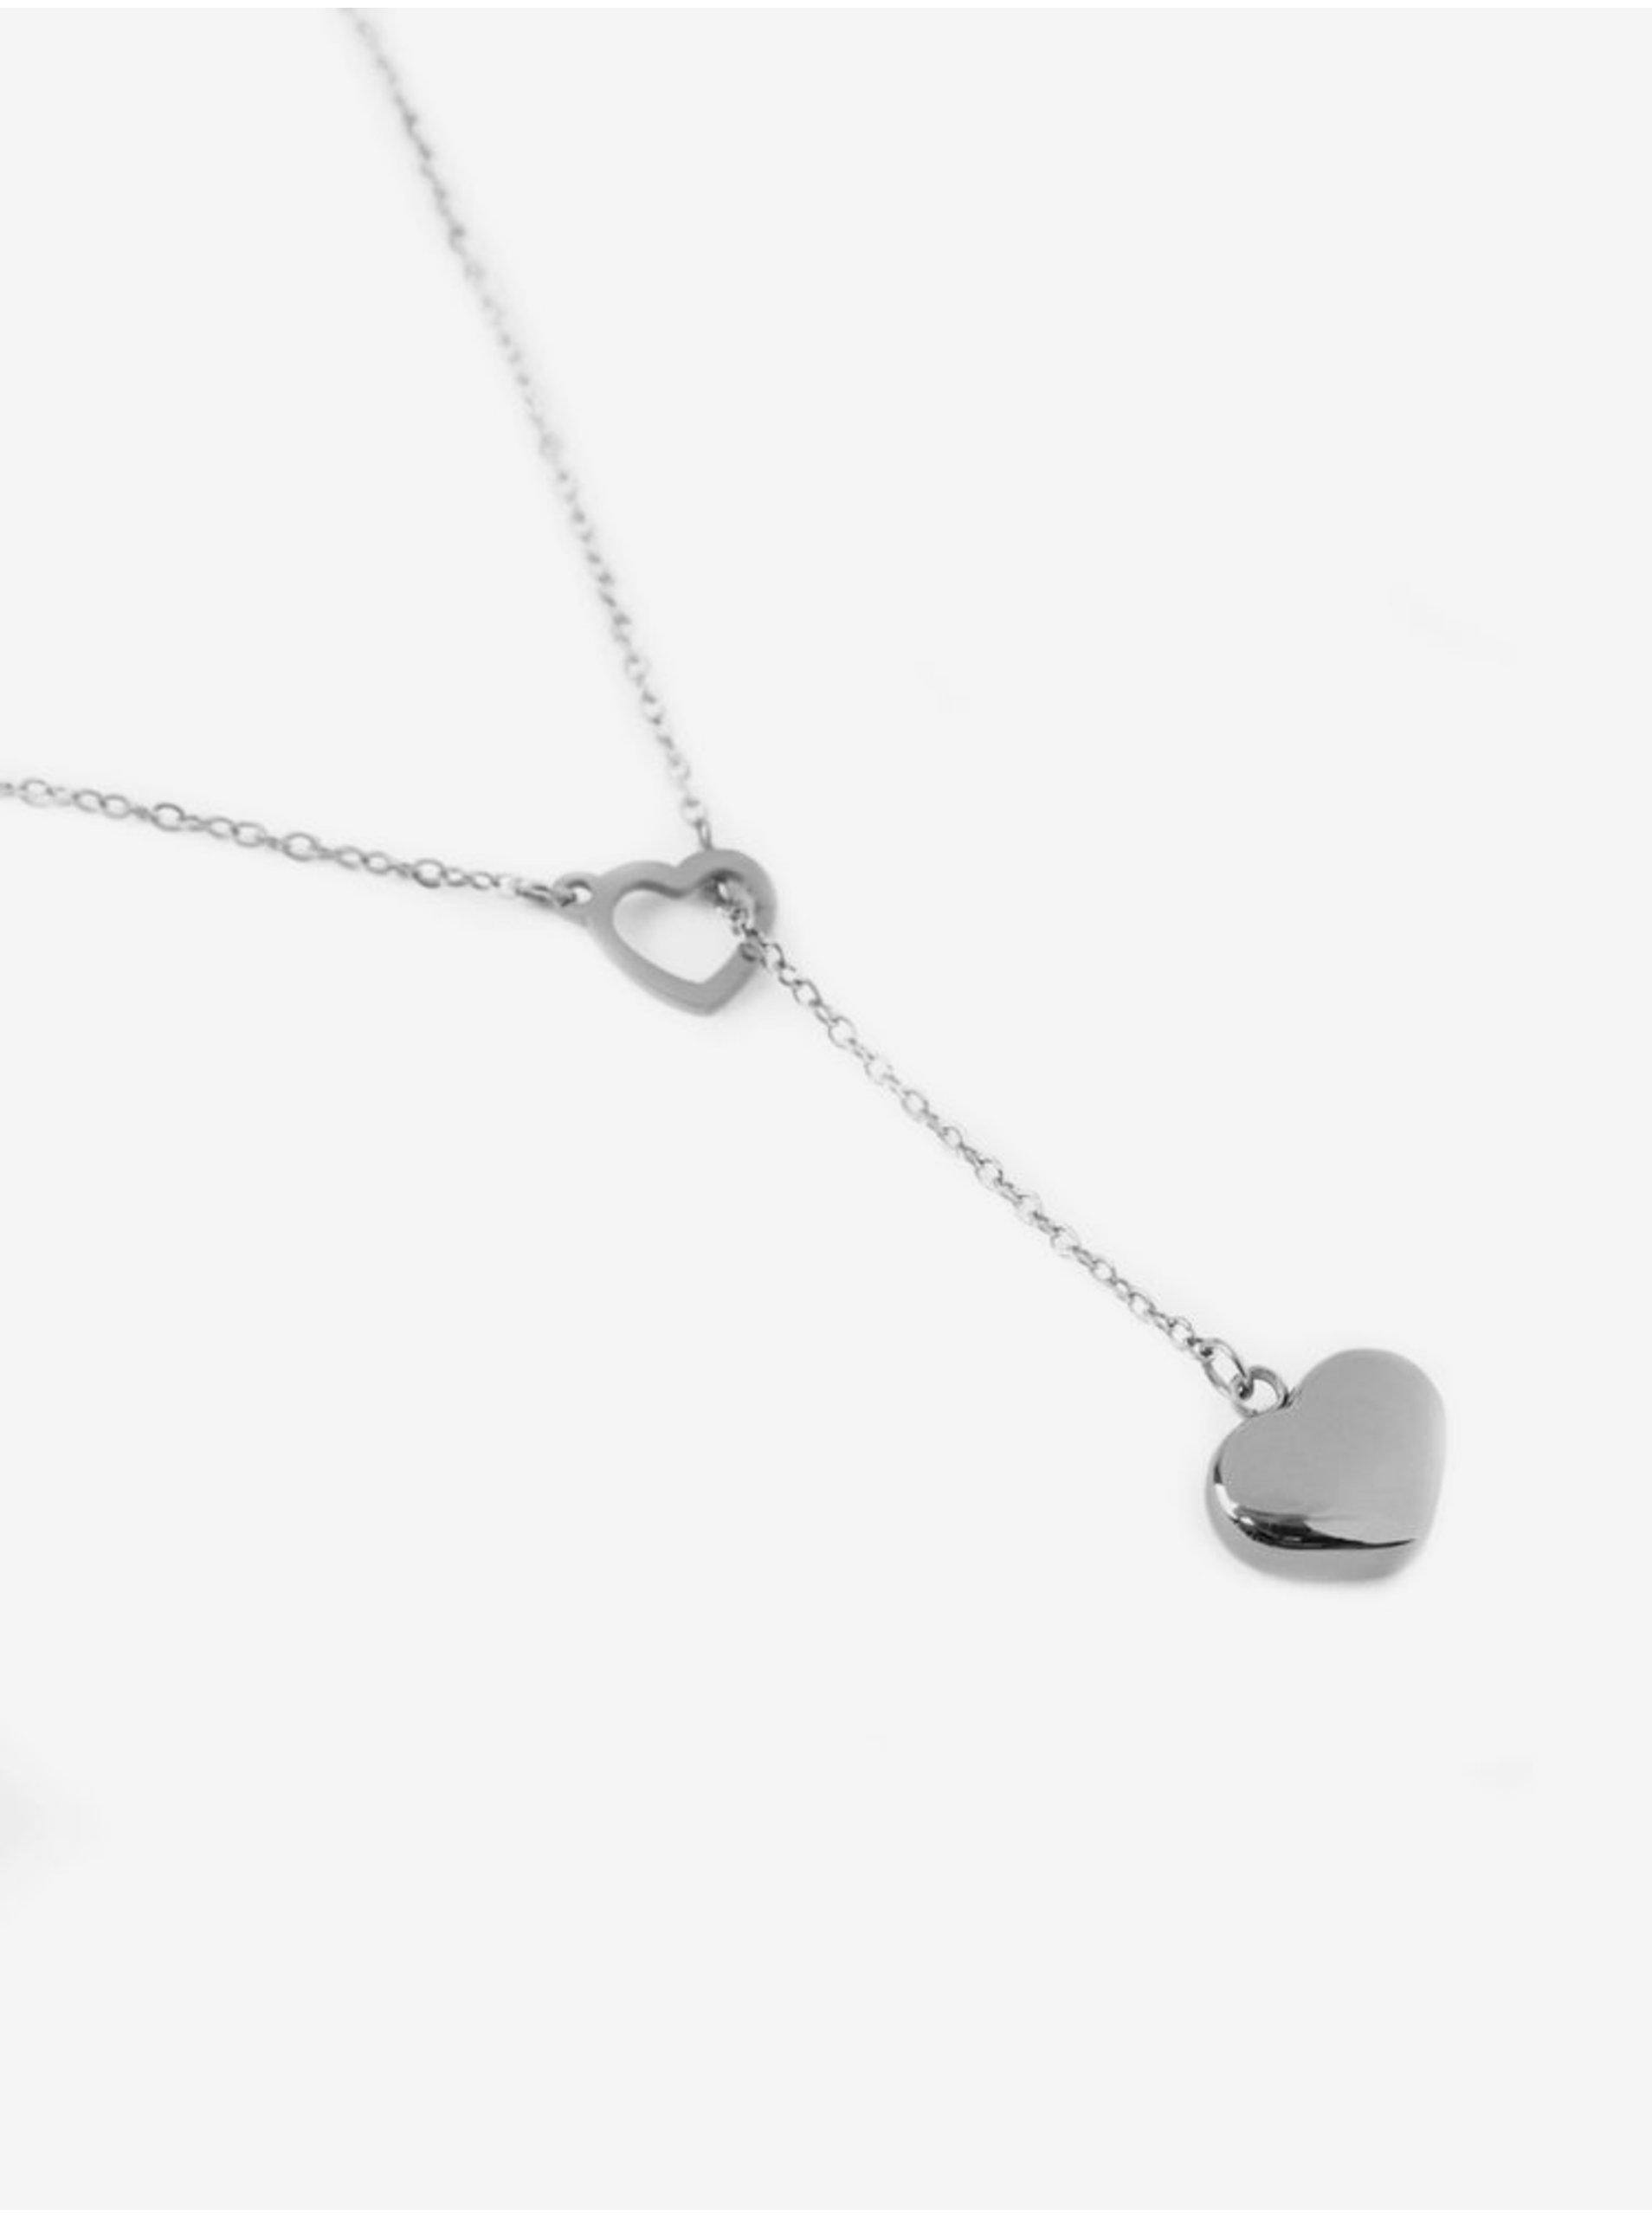 E-shop Dámský náhrdelník s motivem srdce ve stříbrné barvě VUCH Sweet heart Silver